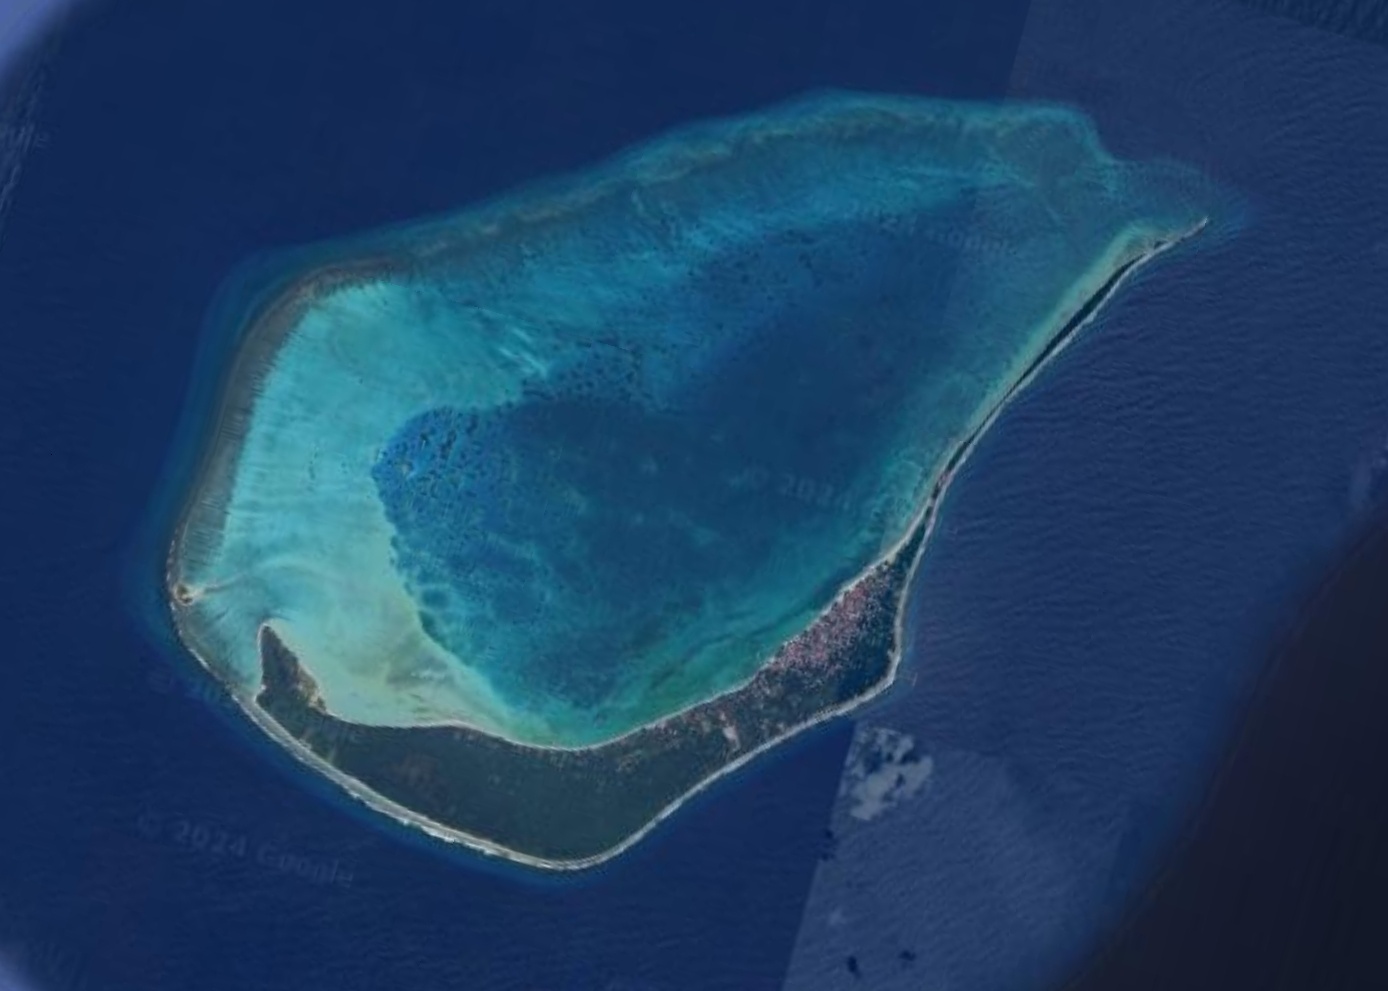 INS Jatayu: Lakshadweeps Minicoy Island to get new Indian Navy base